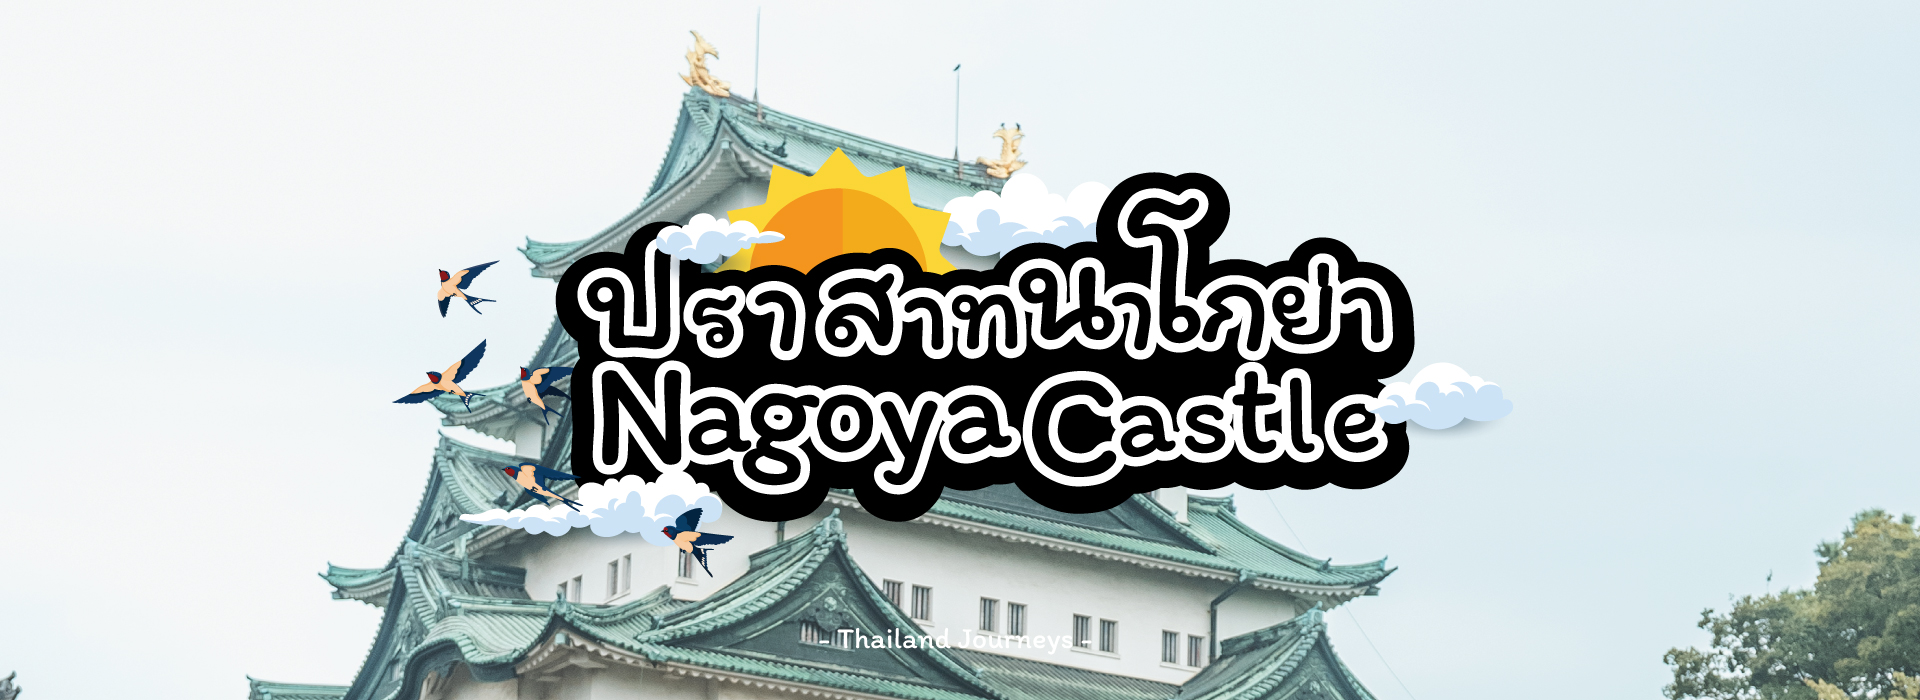 ปราสาทนาโกย่า (Nagoya Castle)